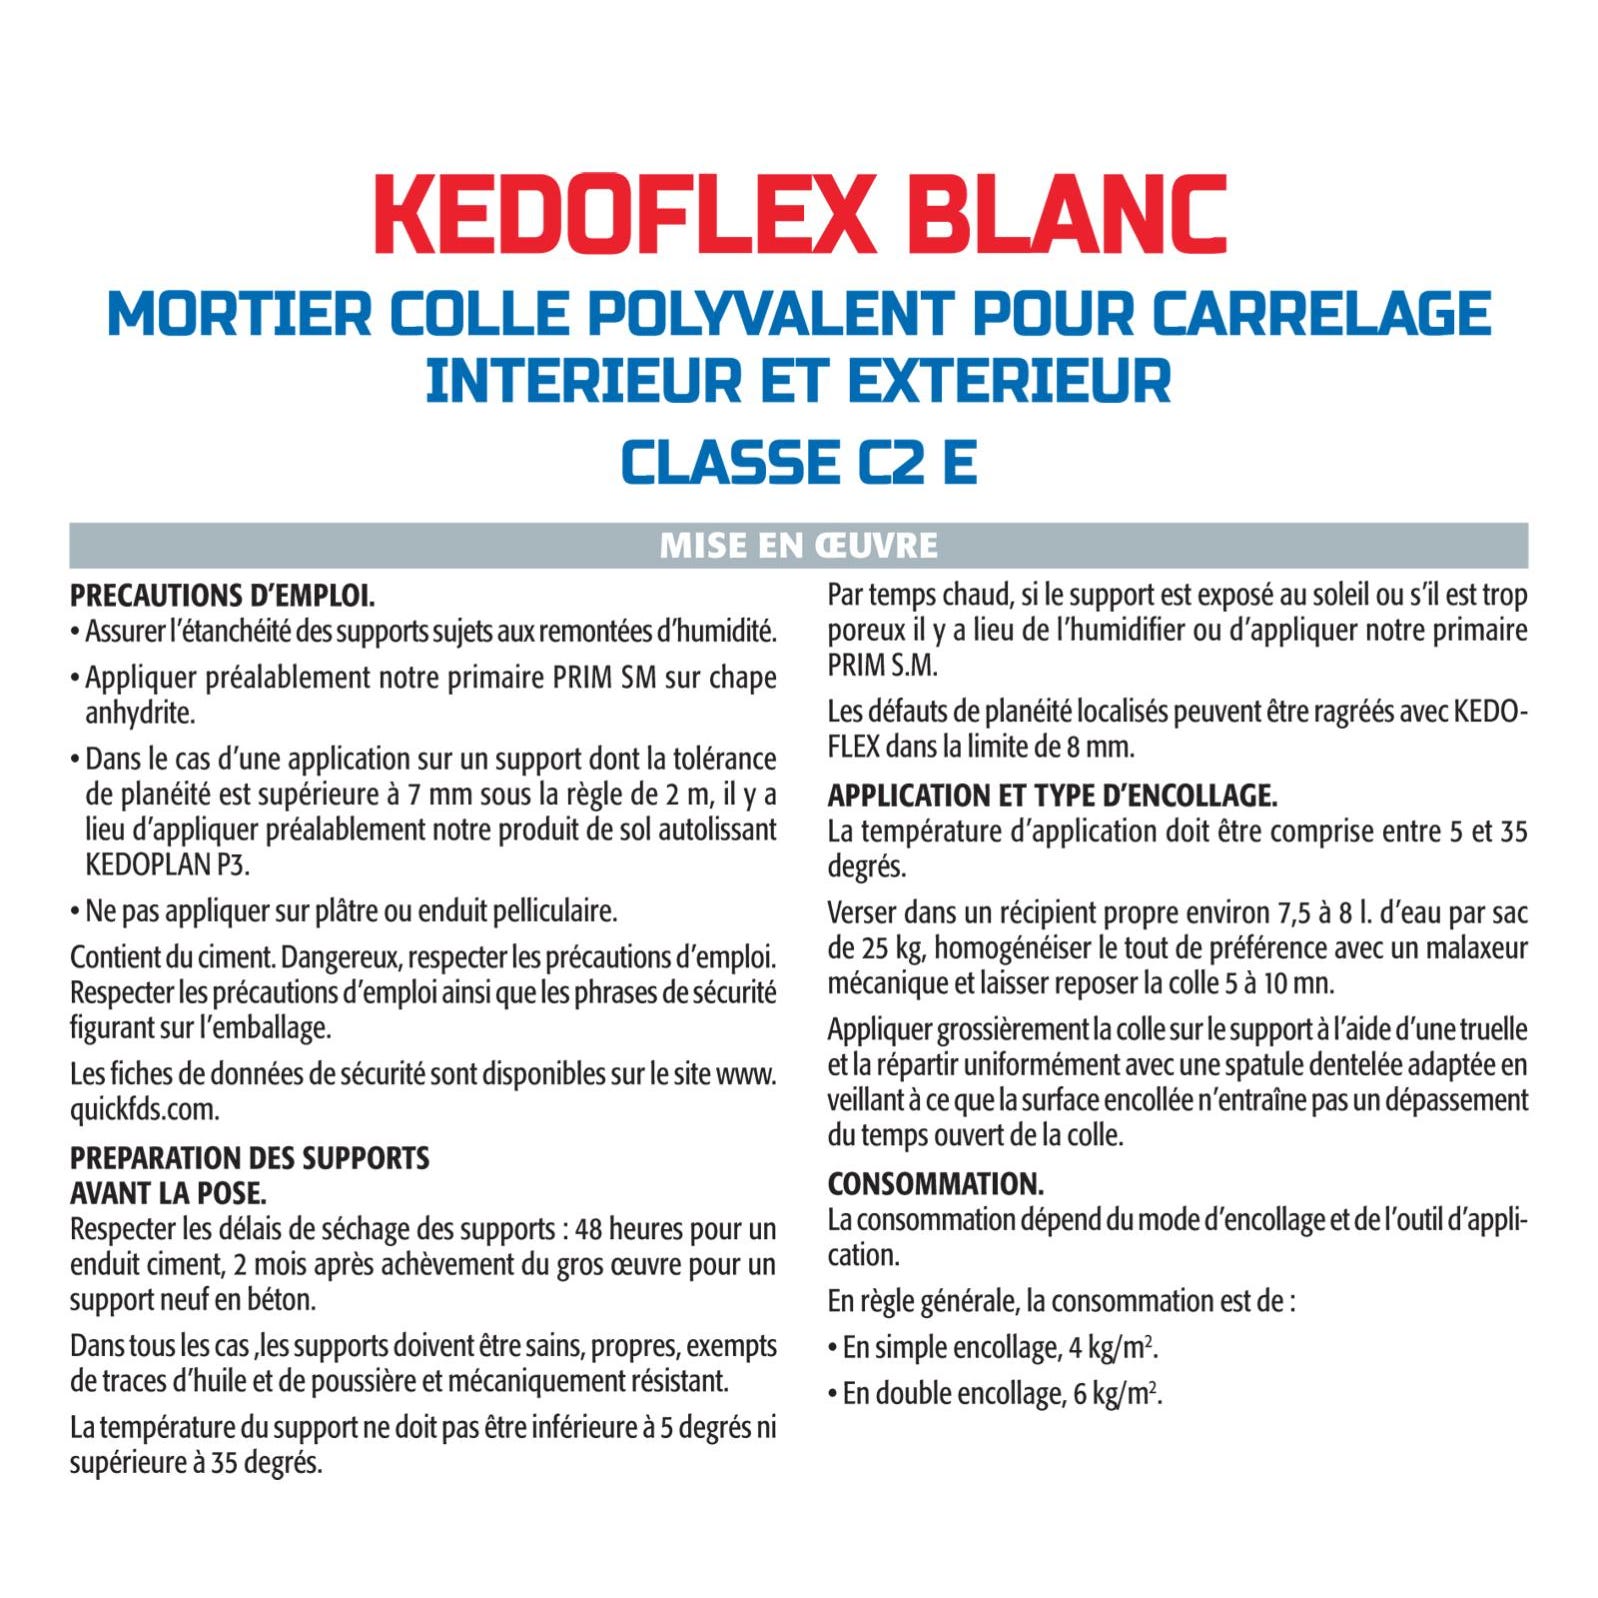 Mortier Colle Polyvalent pour Carrelage Kedoflex Blanc Semin, Intérieur/Extérieur, sac de 25 kg 2